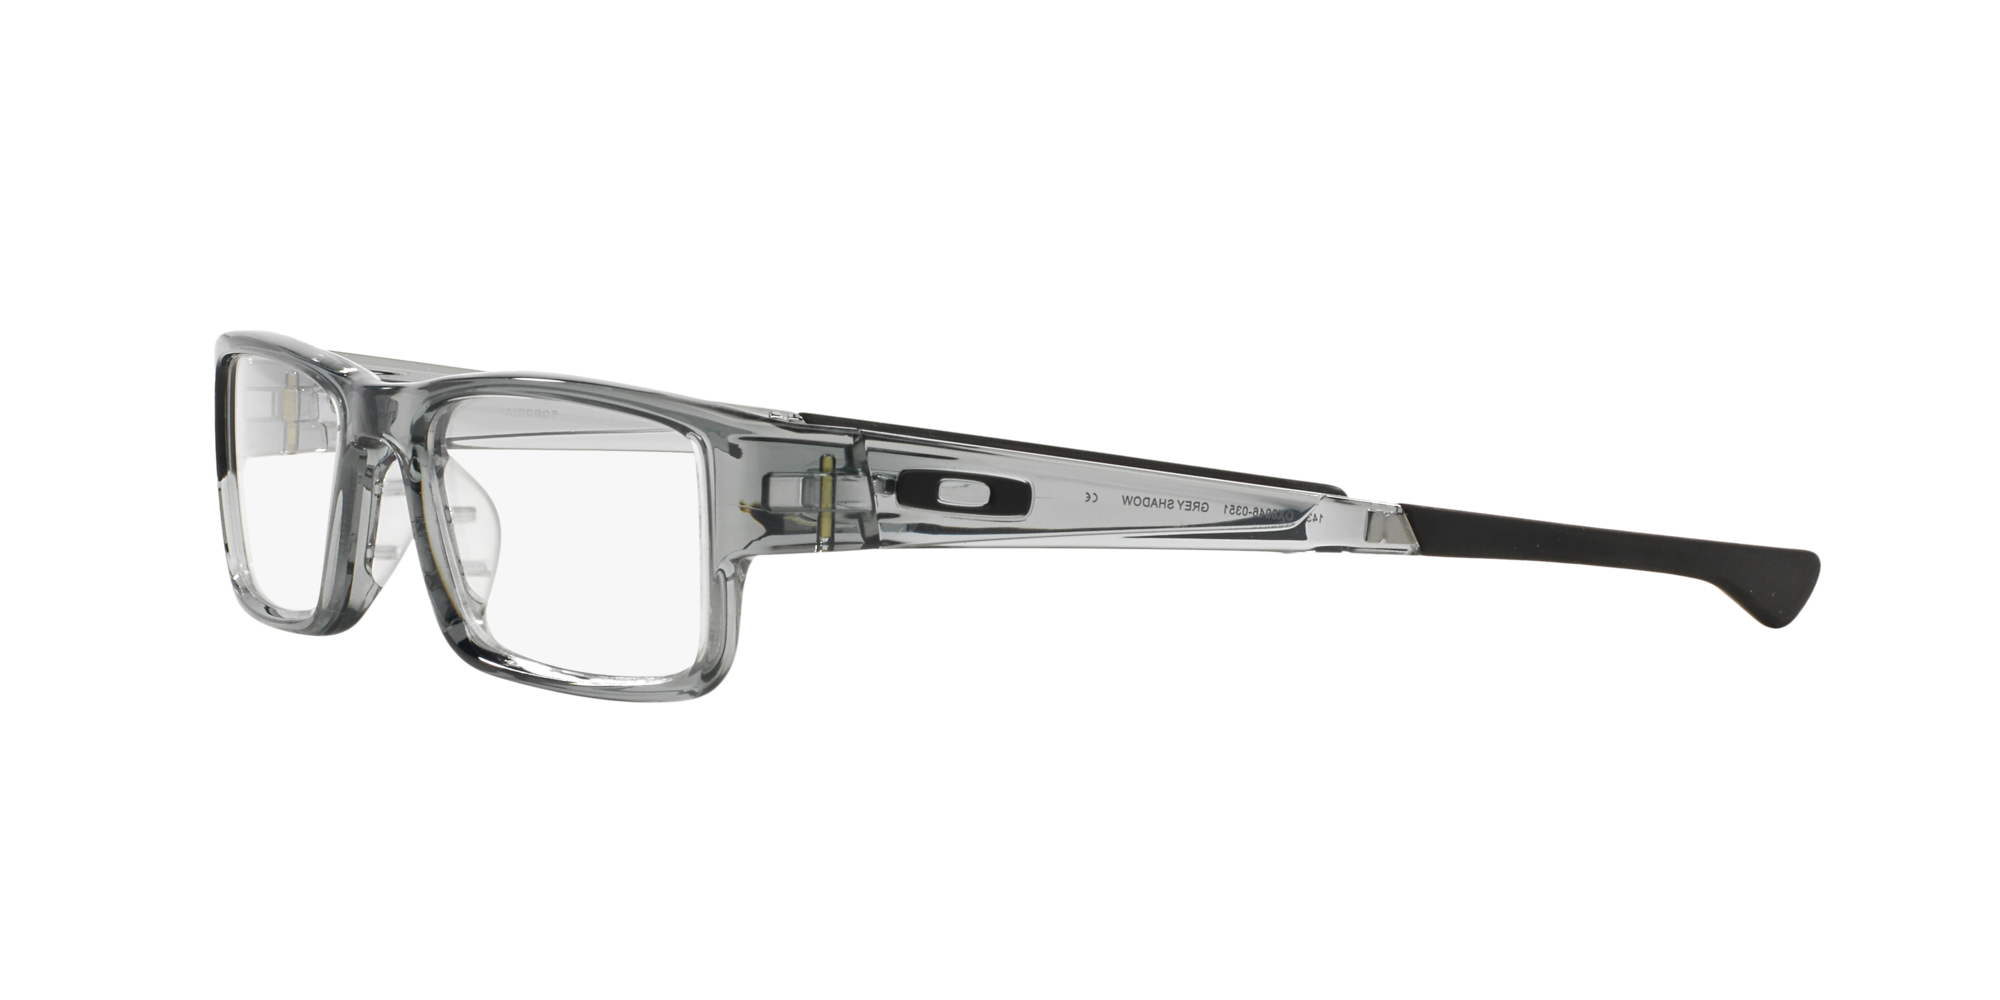 Das Bild zeigt die Korrektionsbrille OX8046 804603  von der Marke Oakley  in  grey  shadow.